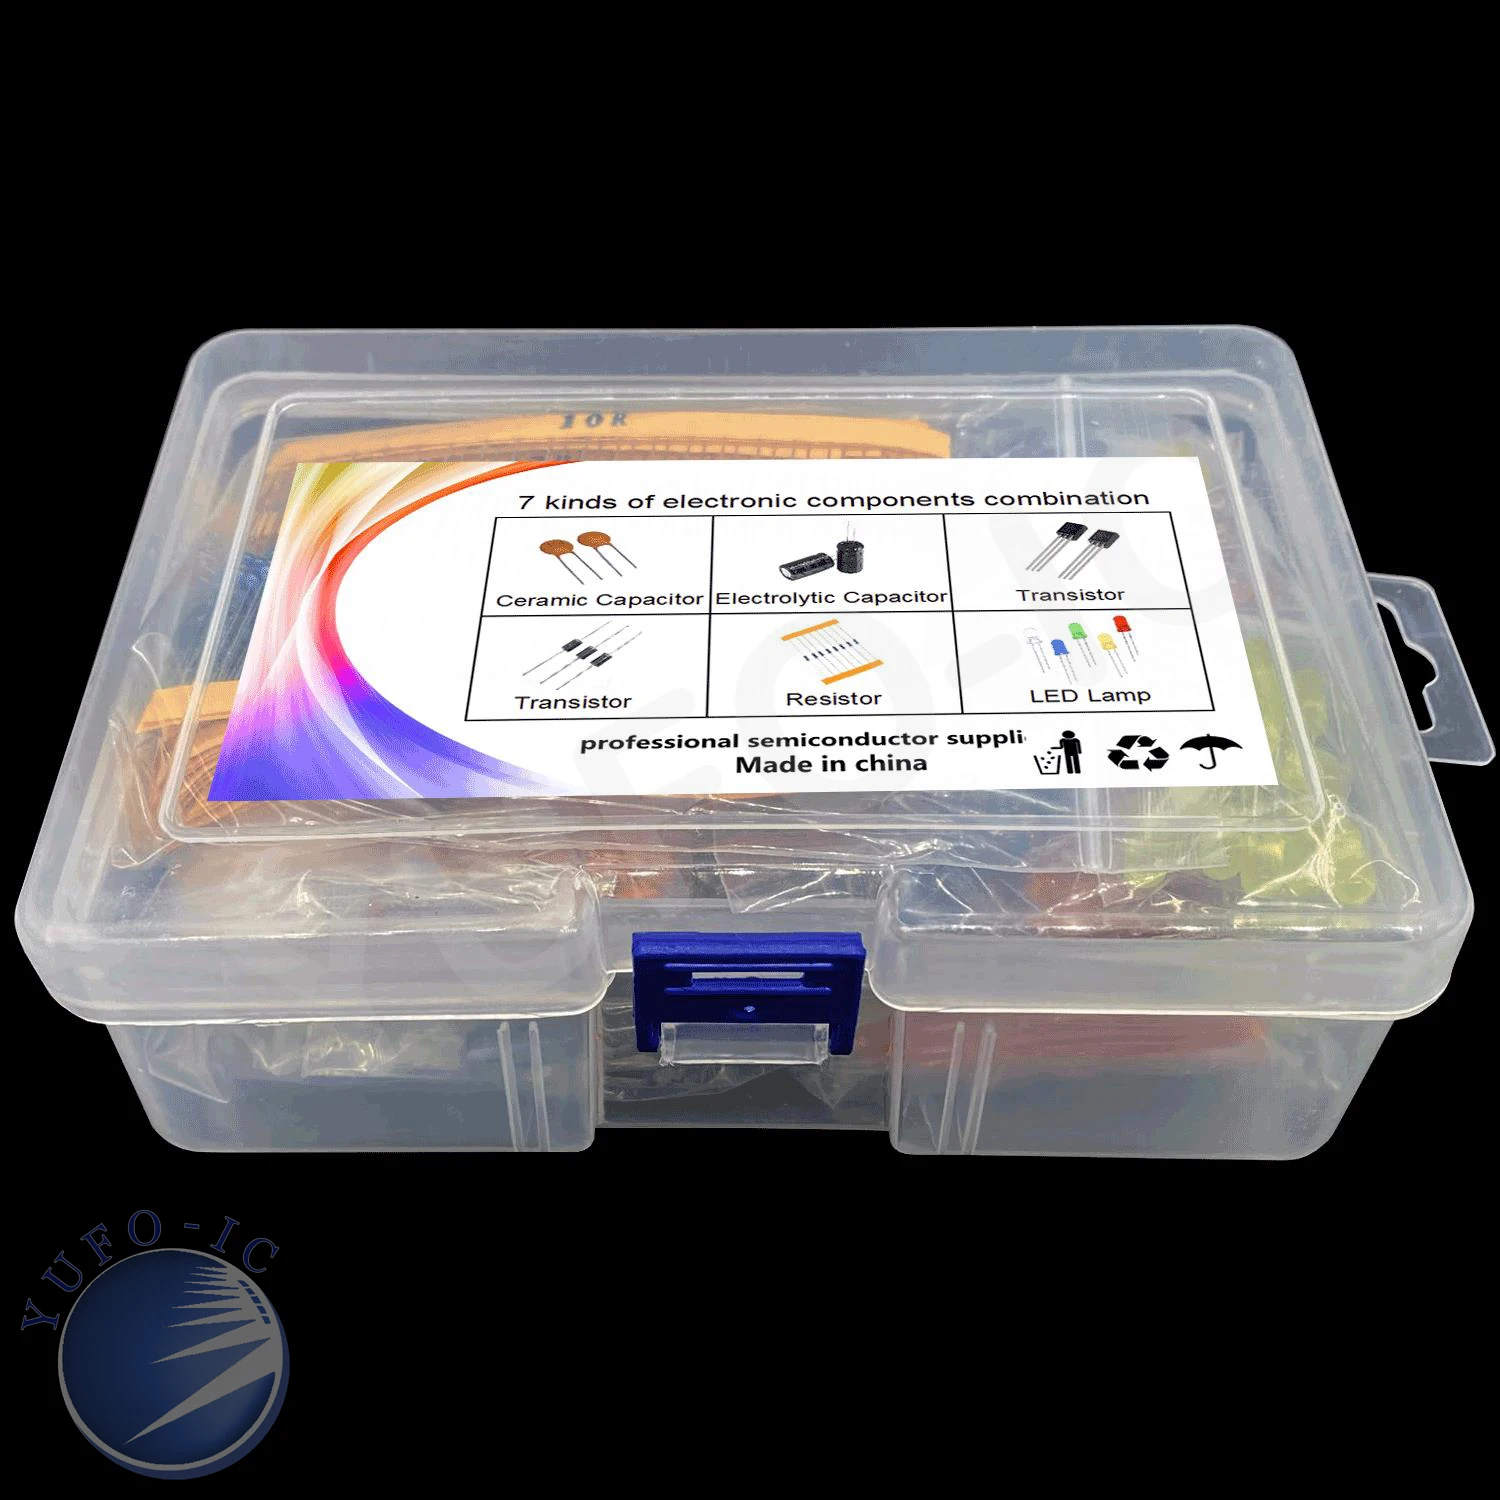 Super Elektronske Komponente: aluminij elektrolitski kondenzator kit+Diode Kit+LED 3 MM 5 MM KIT+Tranzistor kit+Kovinski film upor kit